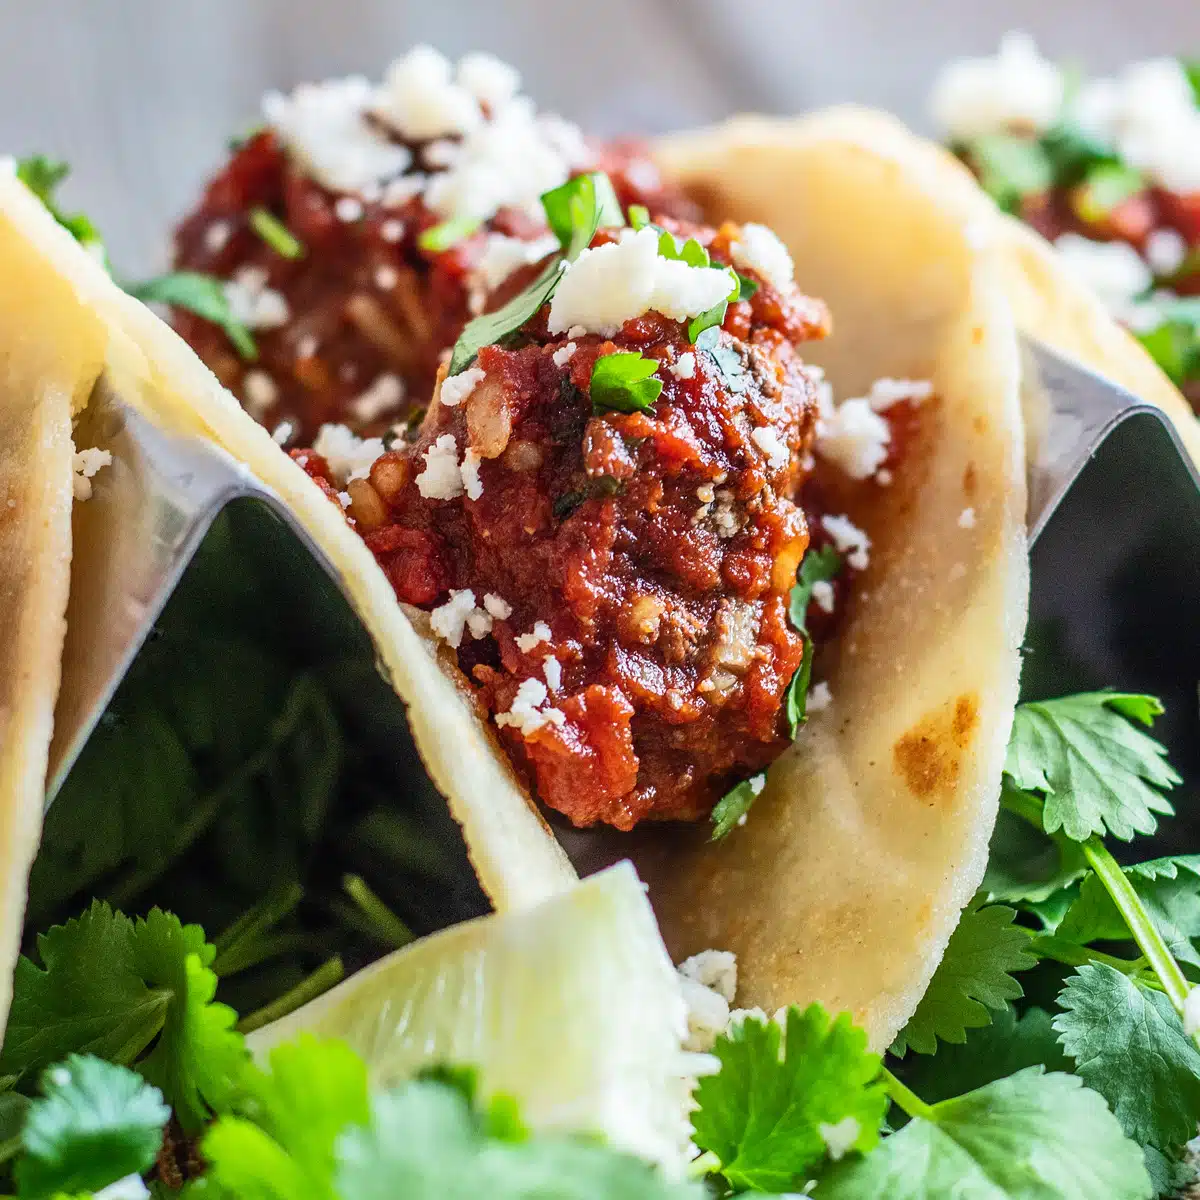 Najbolji recept za albondigas tacose s izdašnim meksičkim mesnim okruglicama u slanom umaku od rajčice i chipotle čilija.